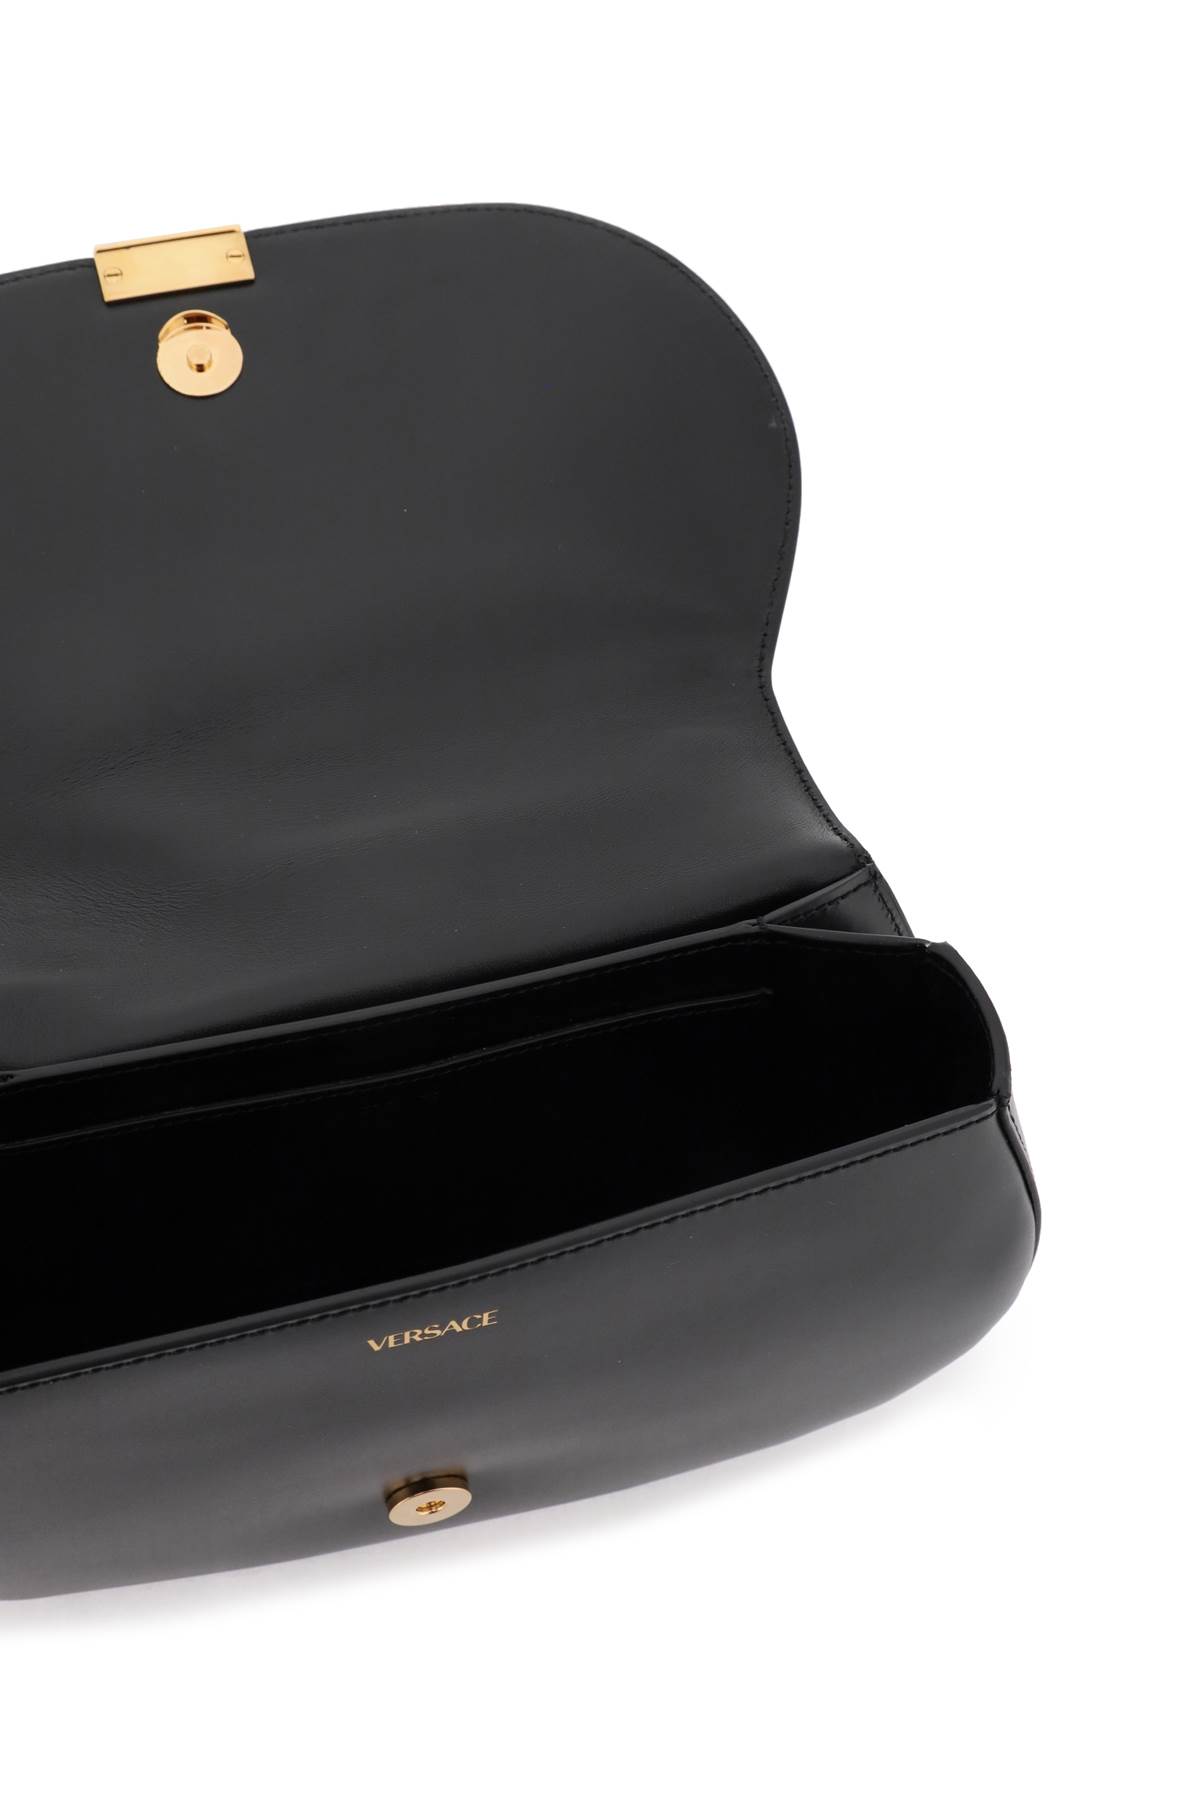 Shop Versace Greca Goddess Shoulder Bag In Black  Gold (black)